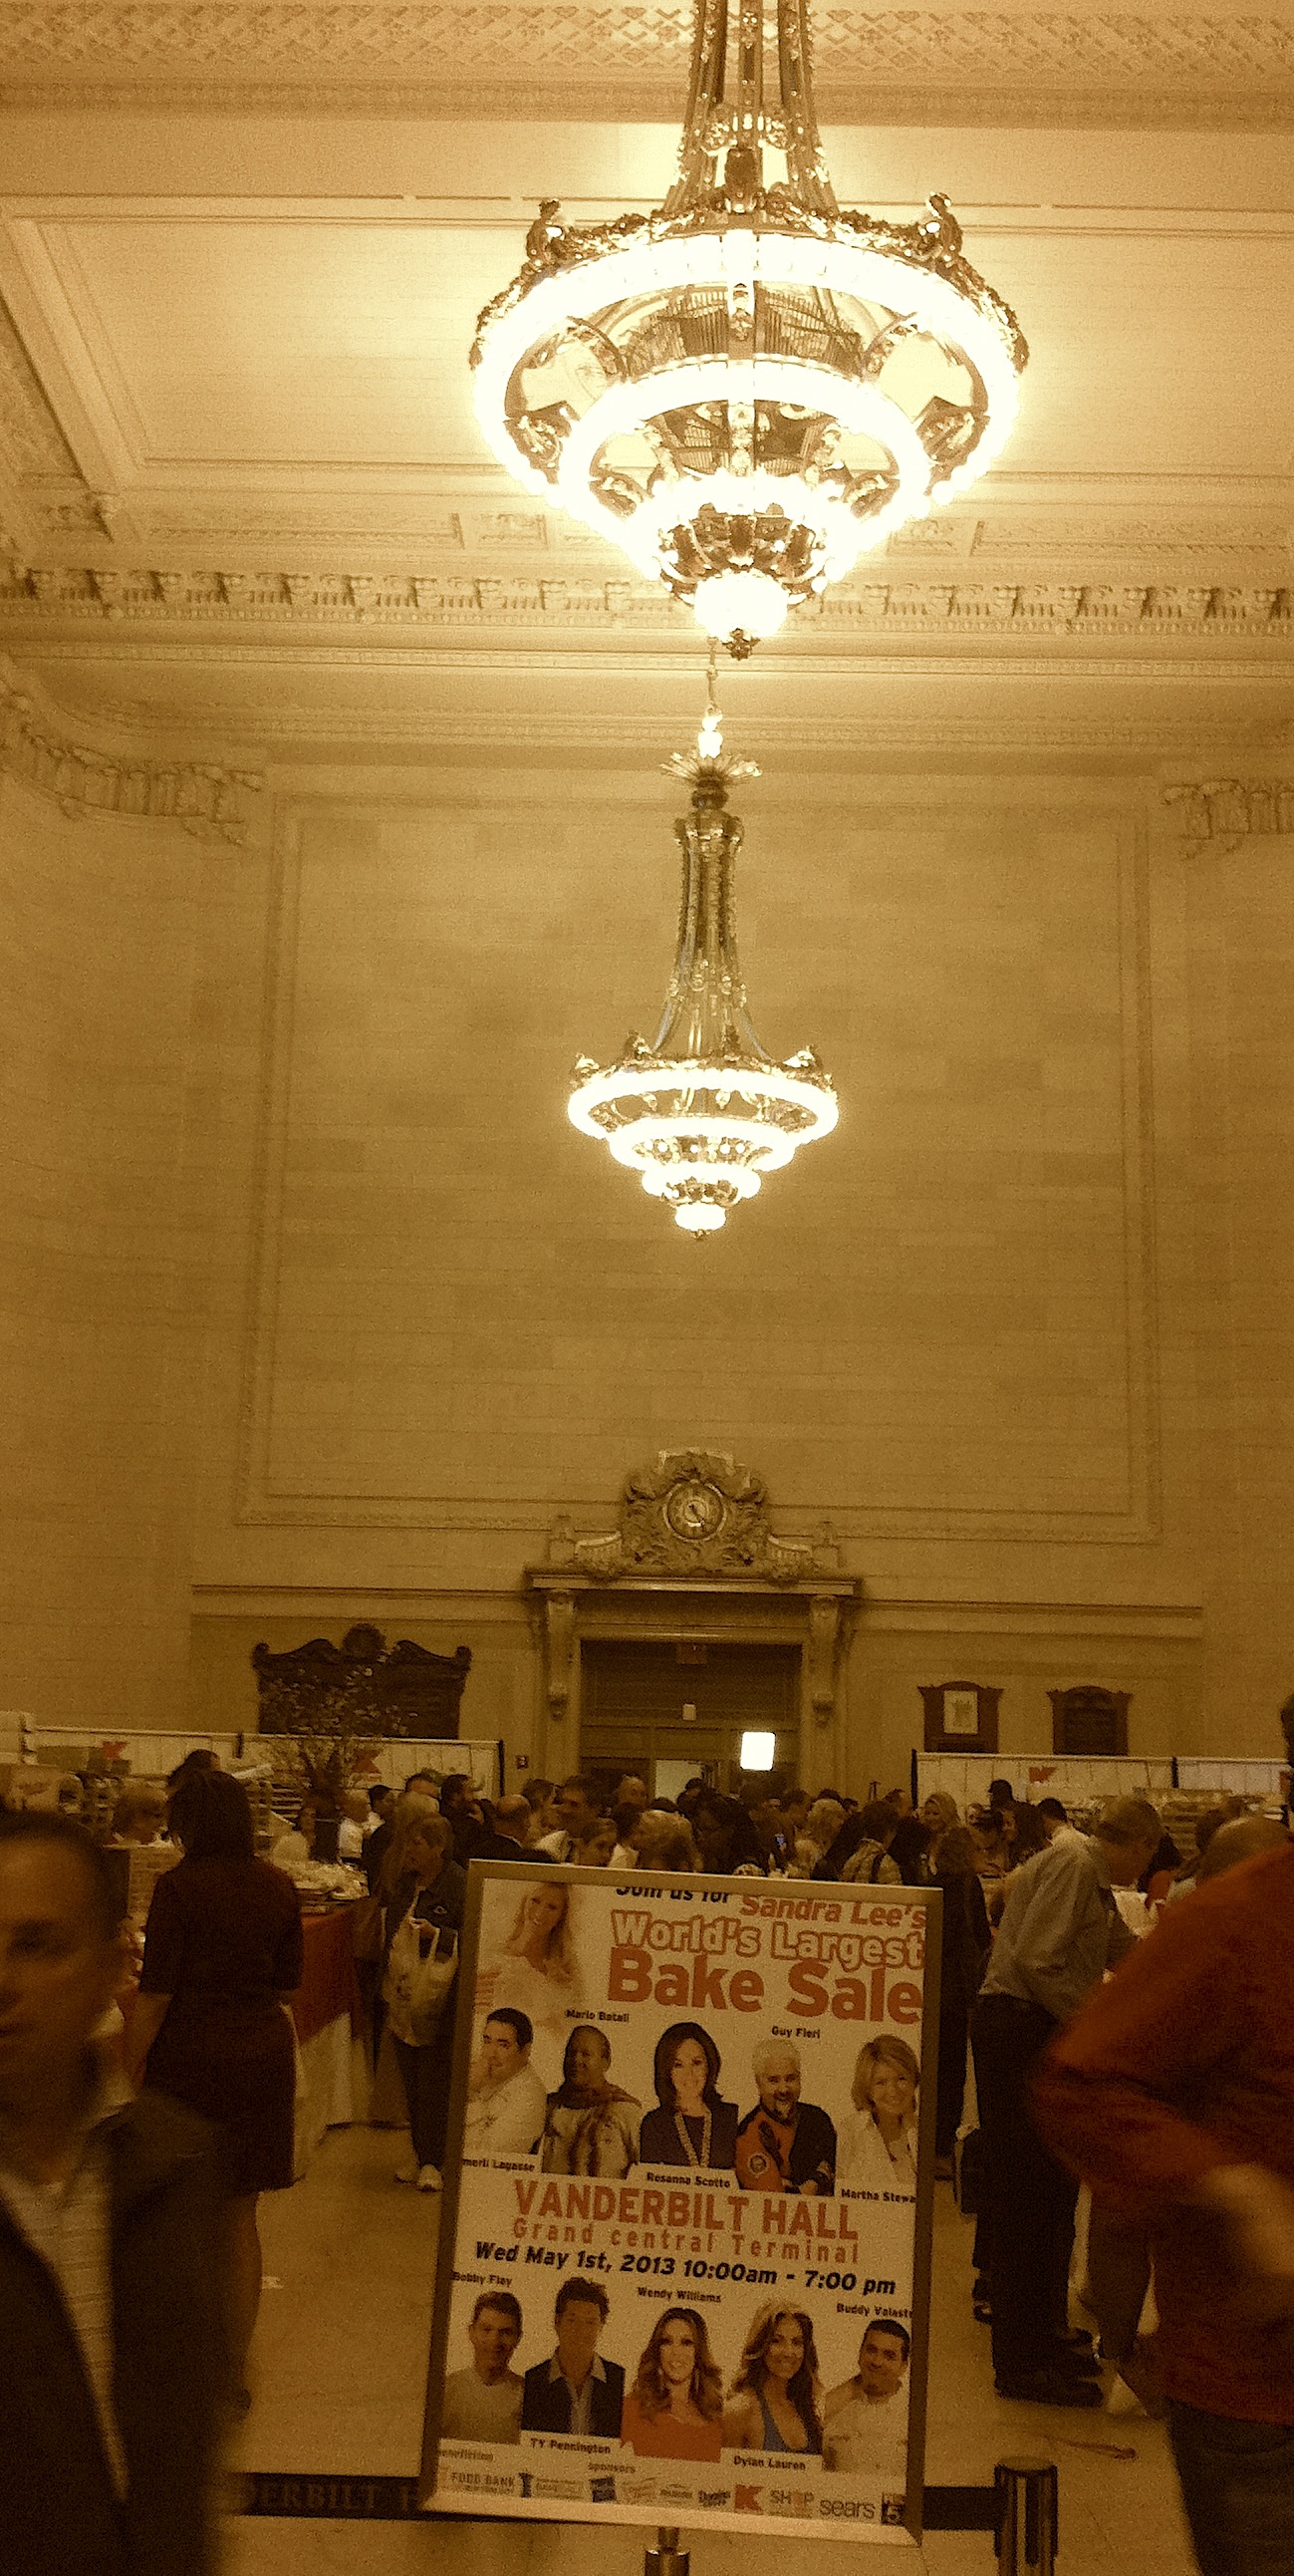 Vanderbilt Hall at Grand Central 